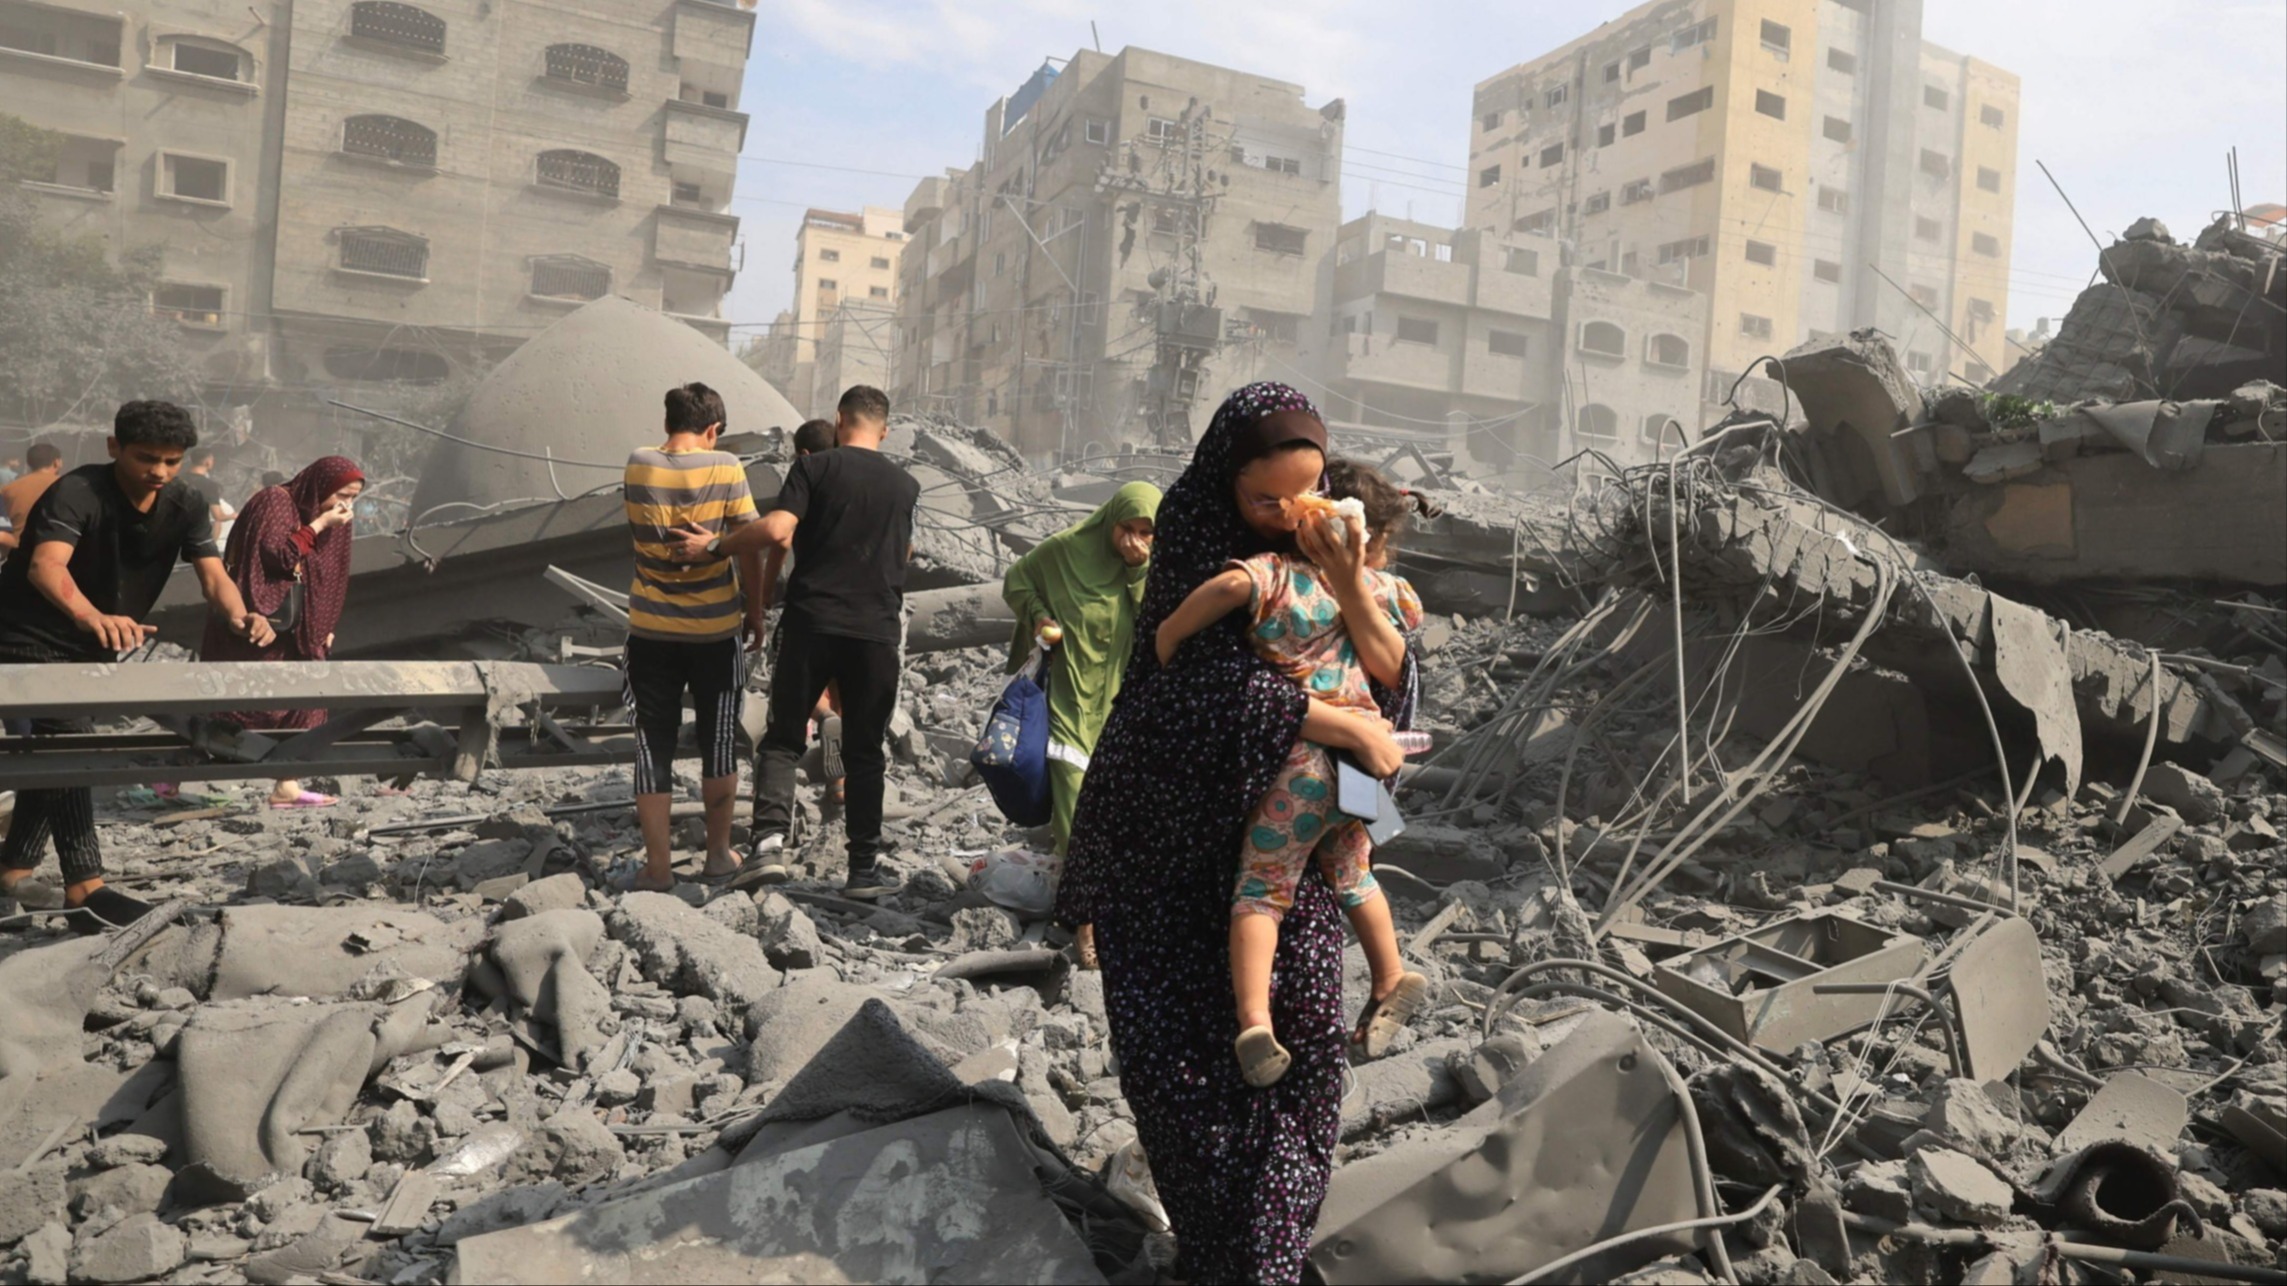 Двойные стандарты людоедства: геноцид палестинцев поддерживается “цивилизованным” Западом